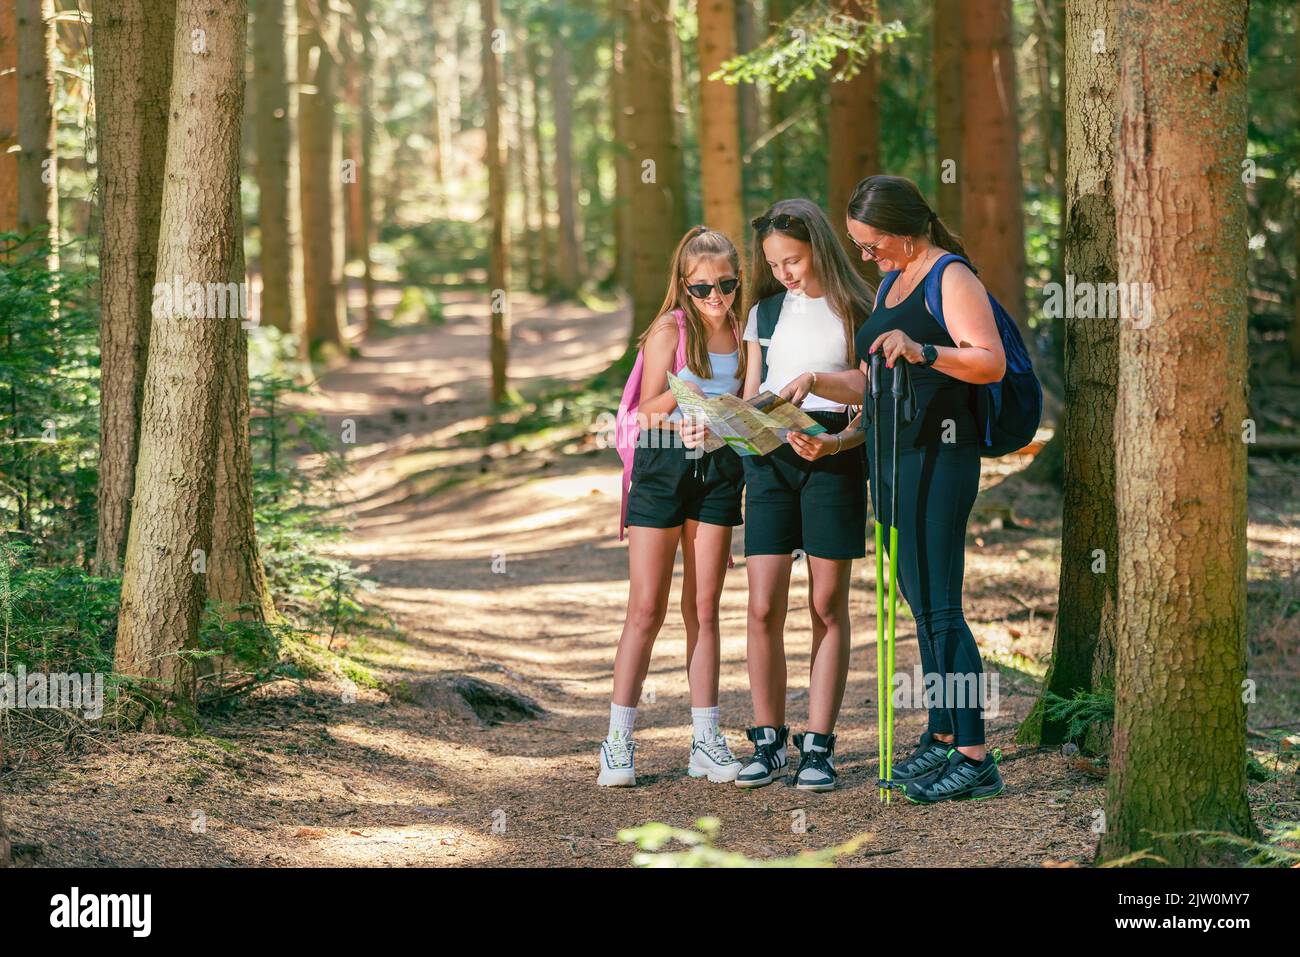 Camino del bosque con mujeres montañeras leyendo un mapa. Las chicas adolescentes sostienen un mapa mientras que una mujer sostiene postes de senderismo Foto de stock